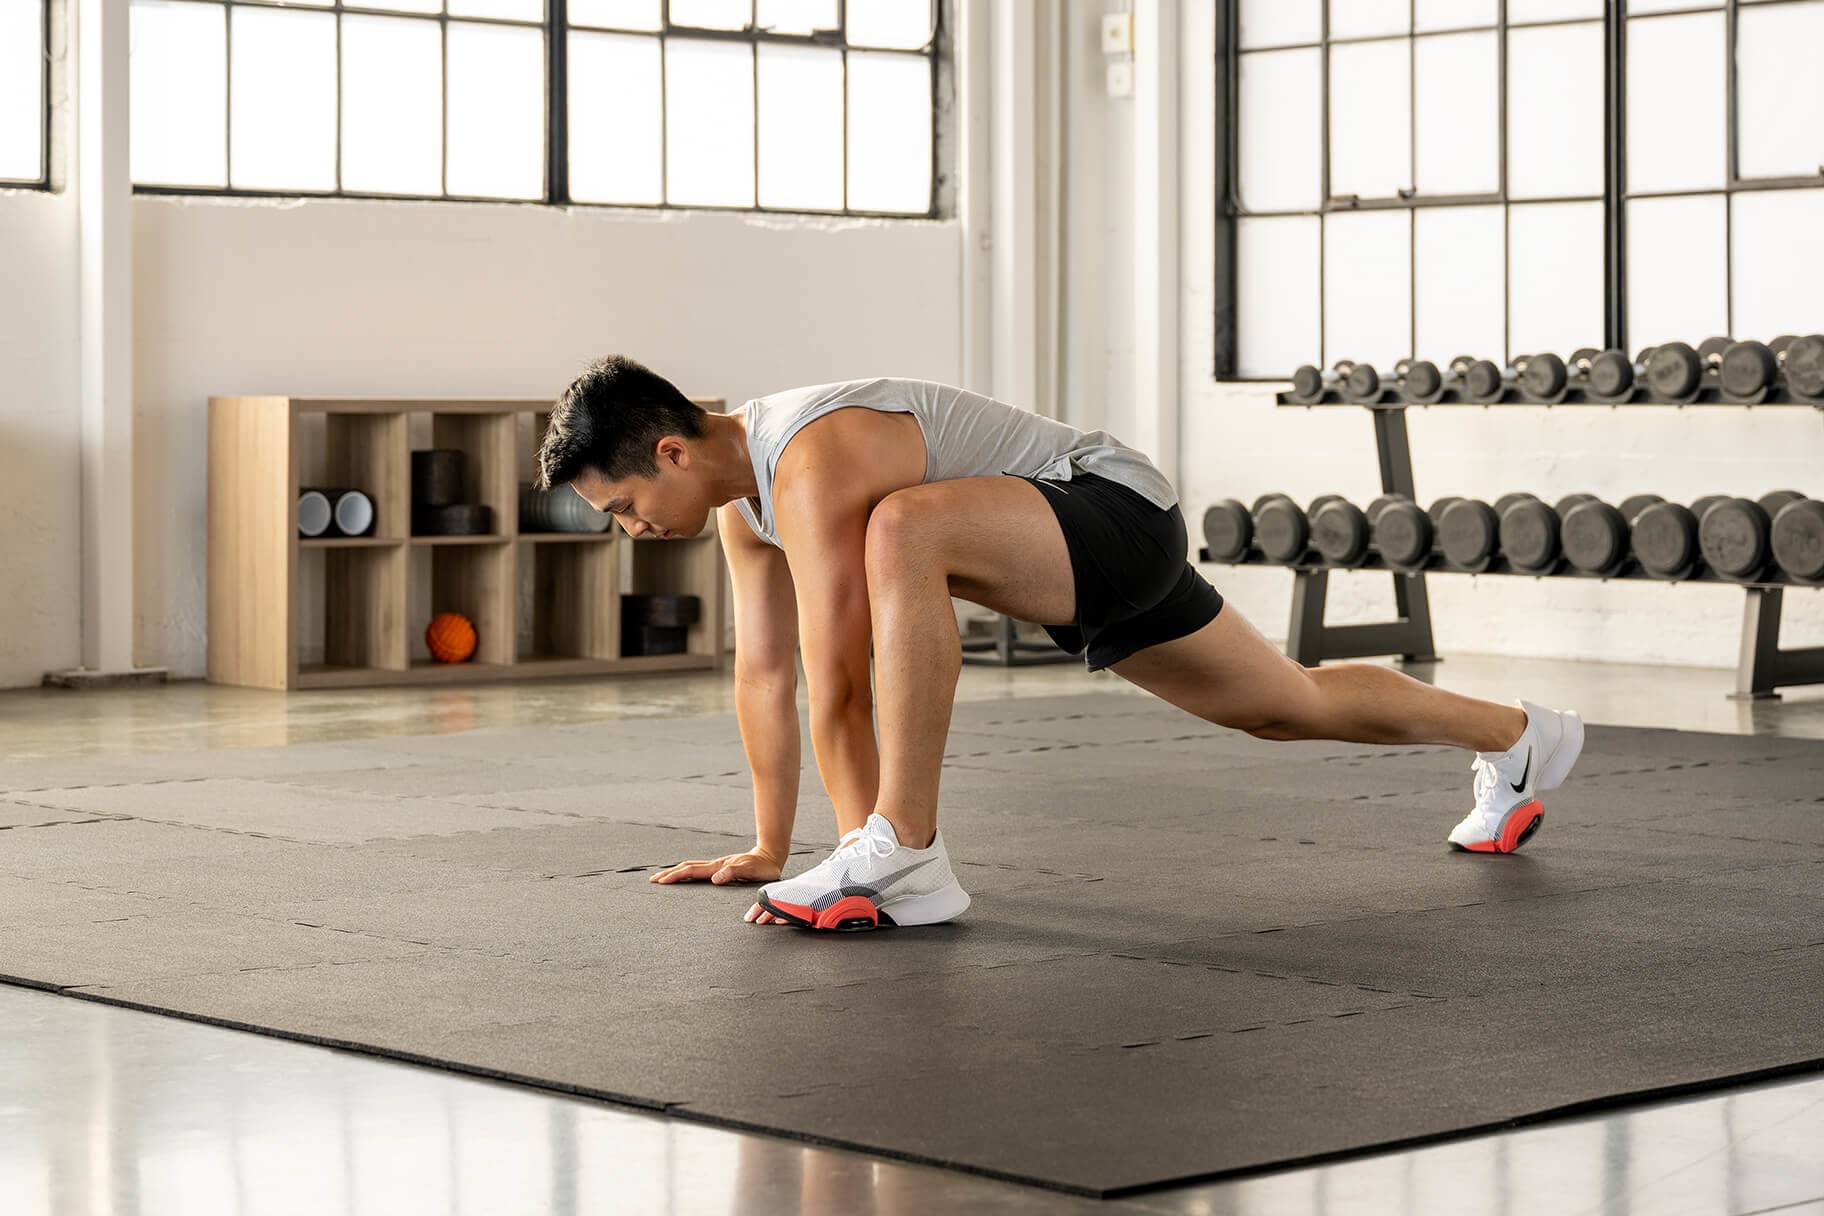 De beste oefeningen stretches voor de van heupen, volgens fysiotherapeuten. Nike NL